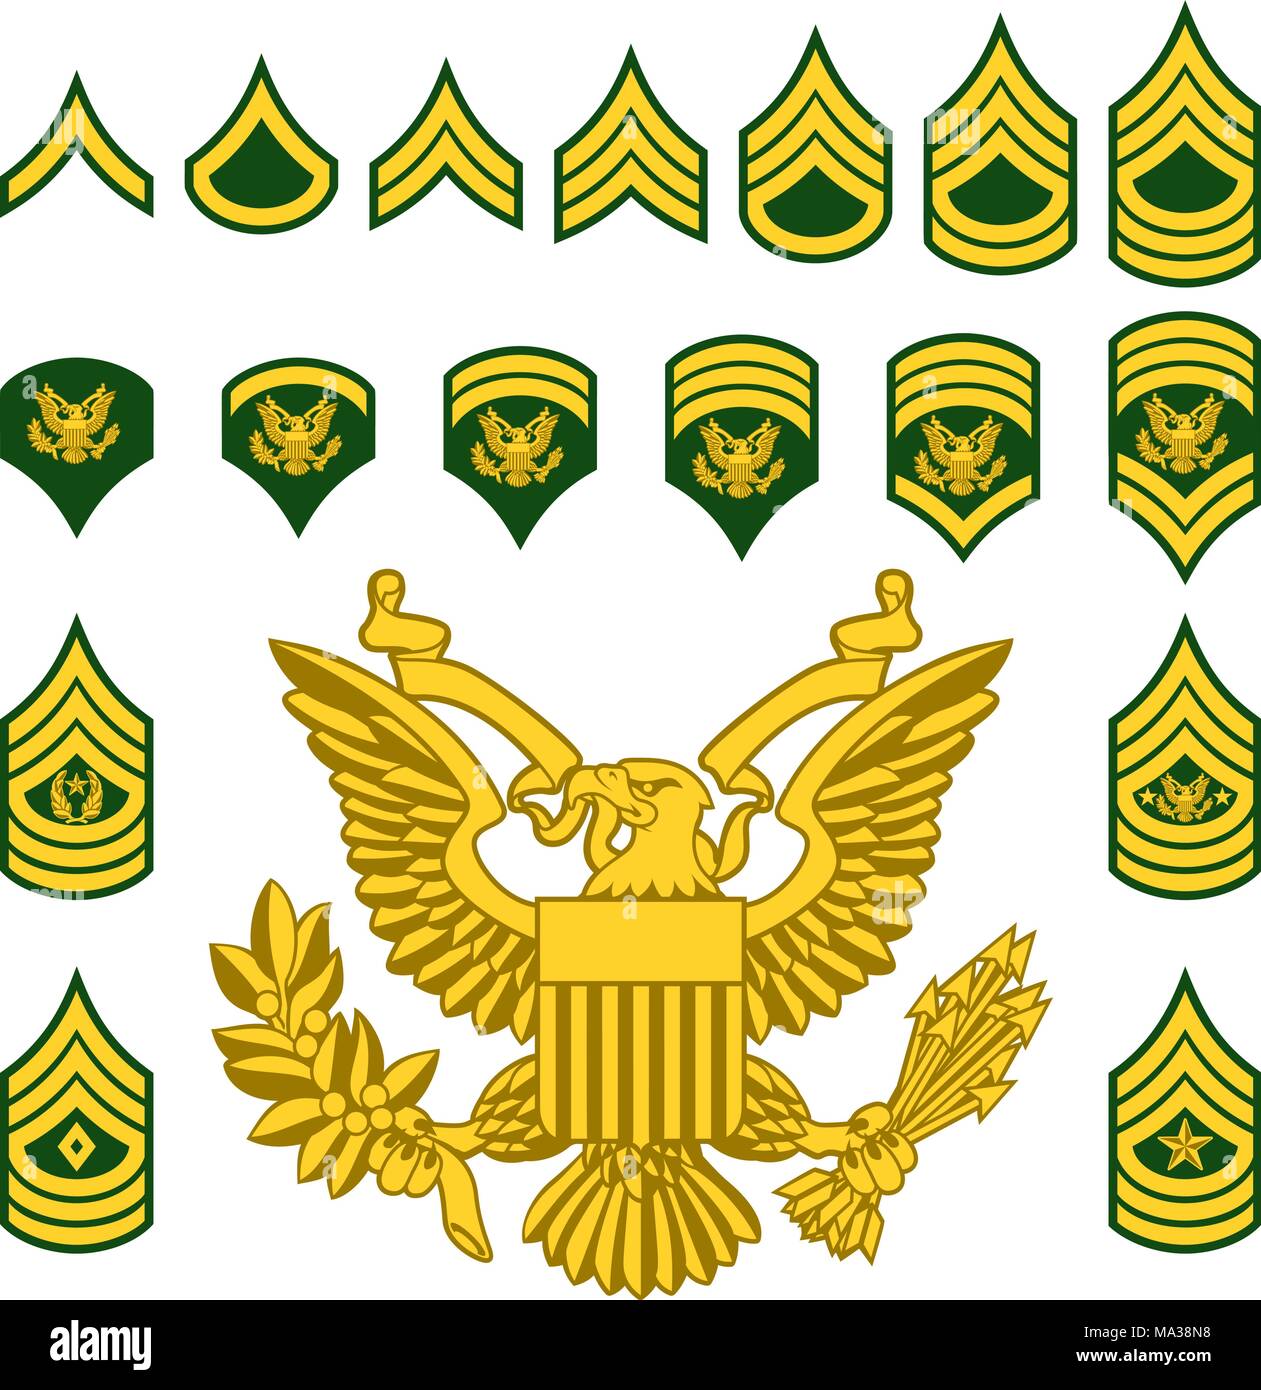 Militär Armee Soldaten Rangabzeichen Stock Vektor